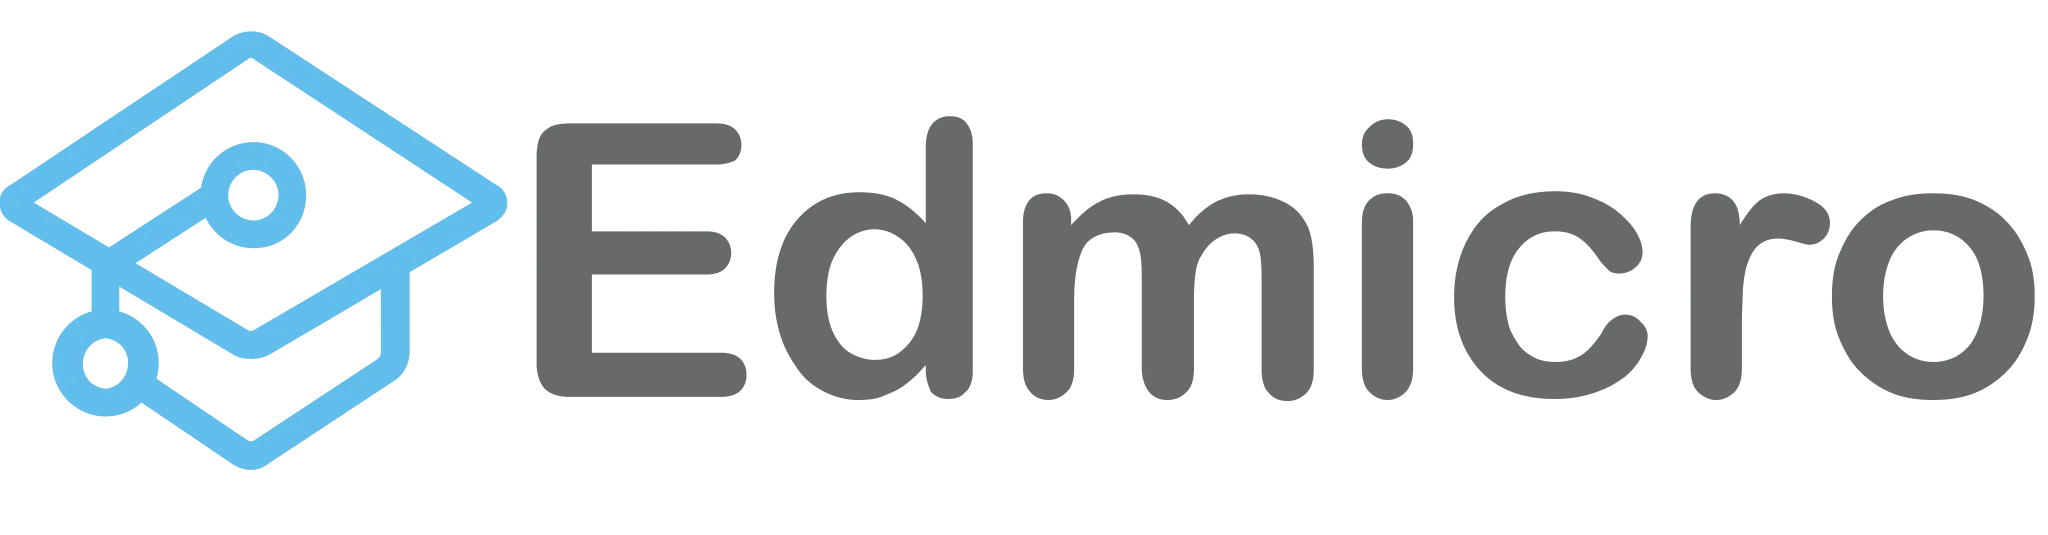 Logo Edmicro ngang